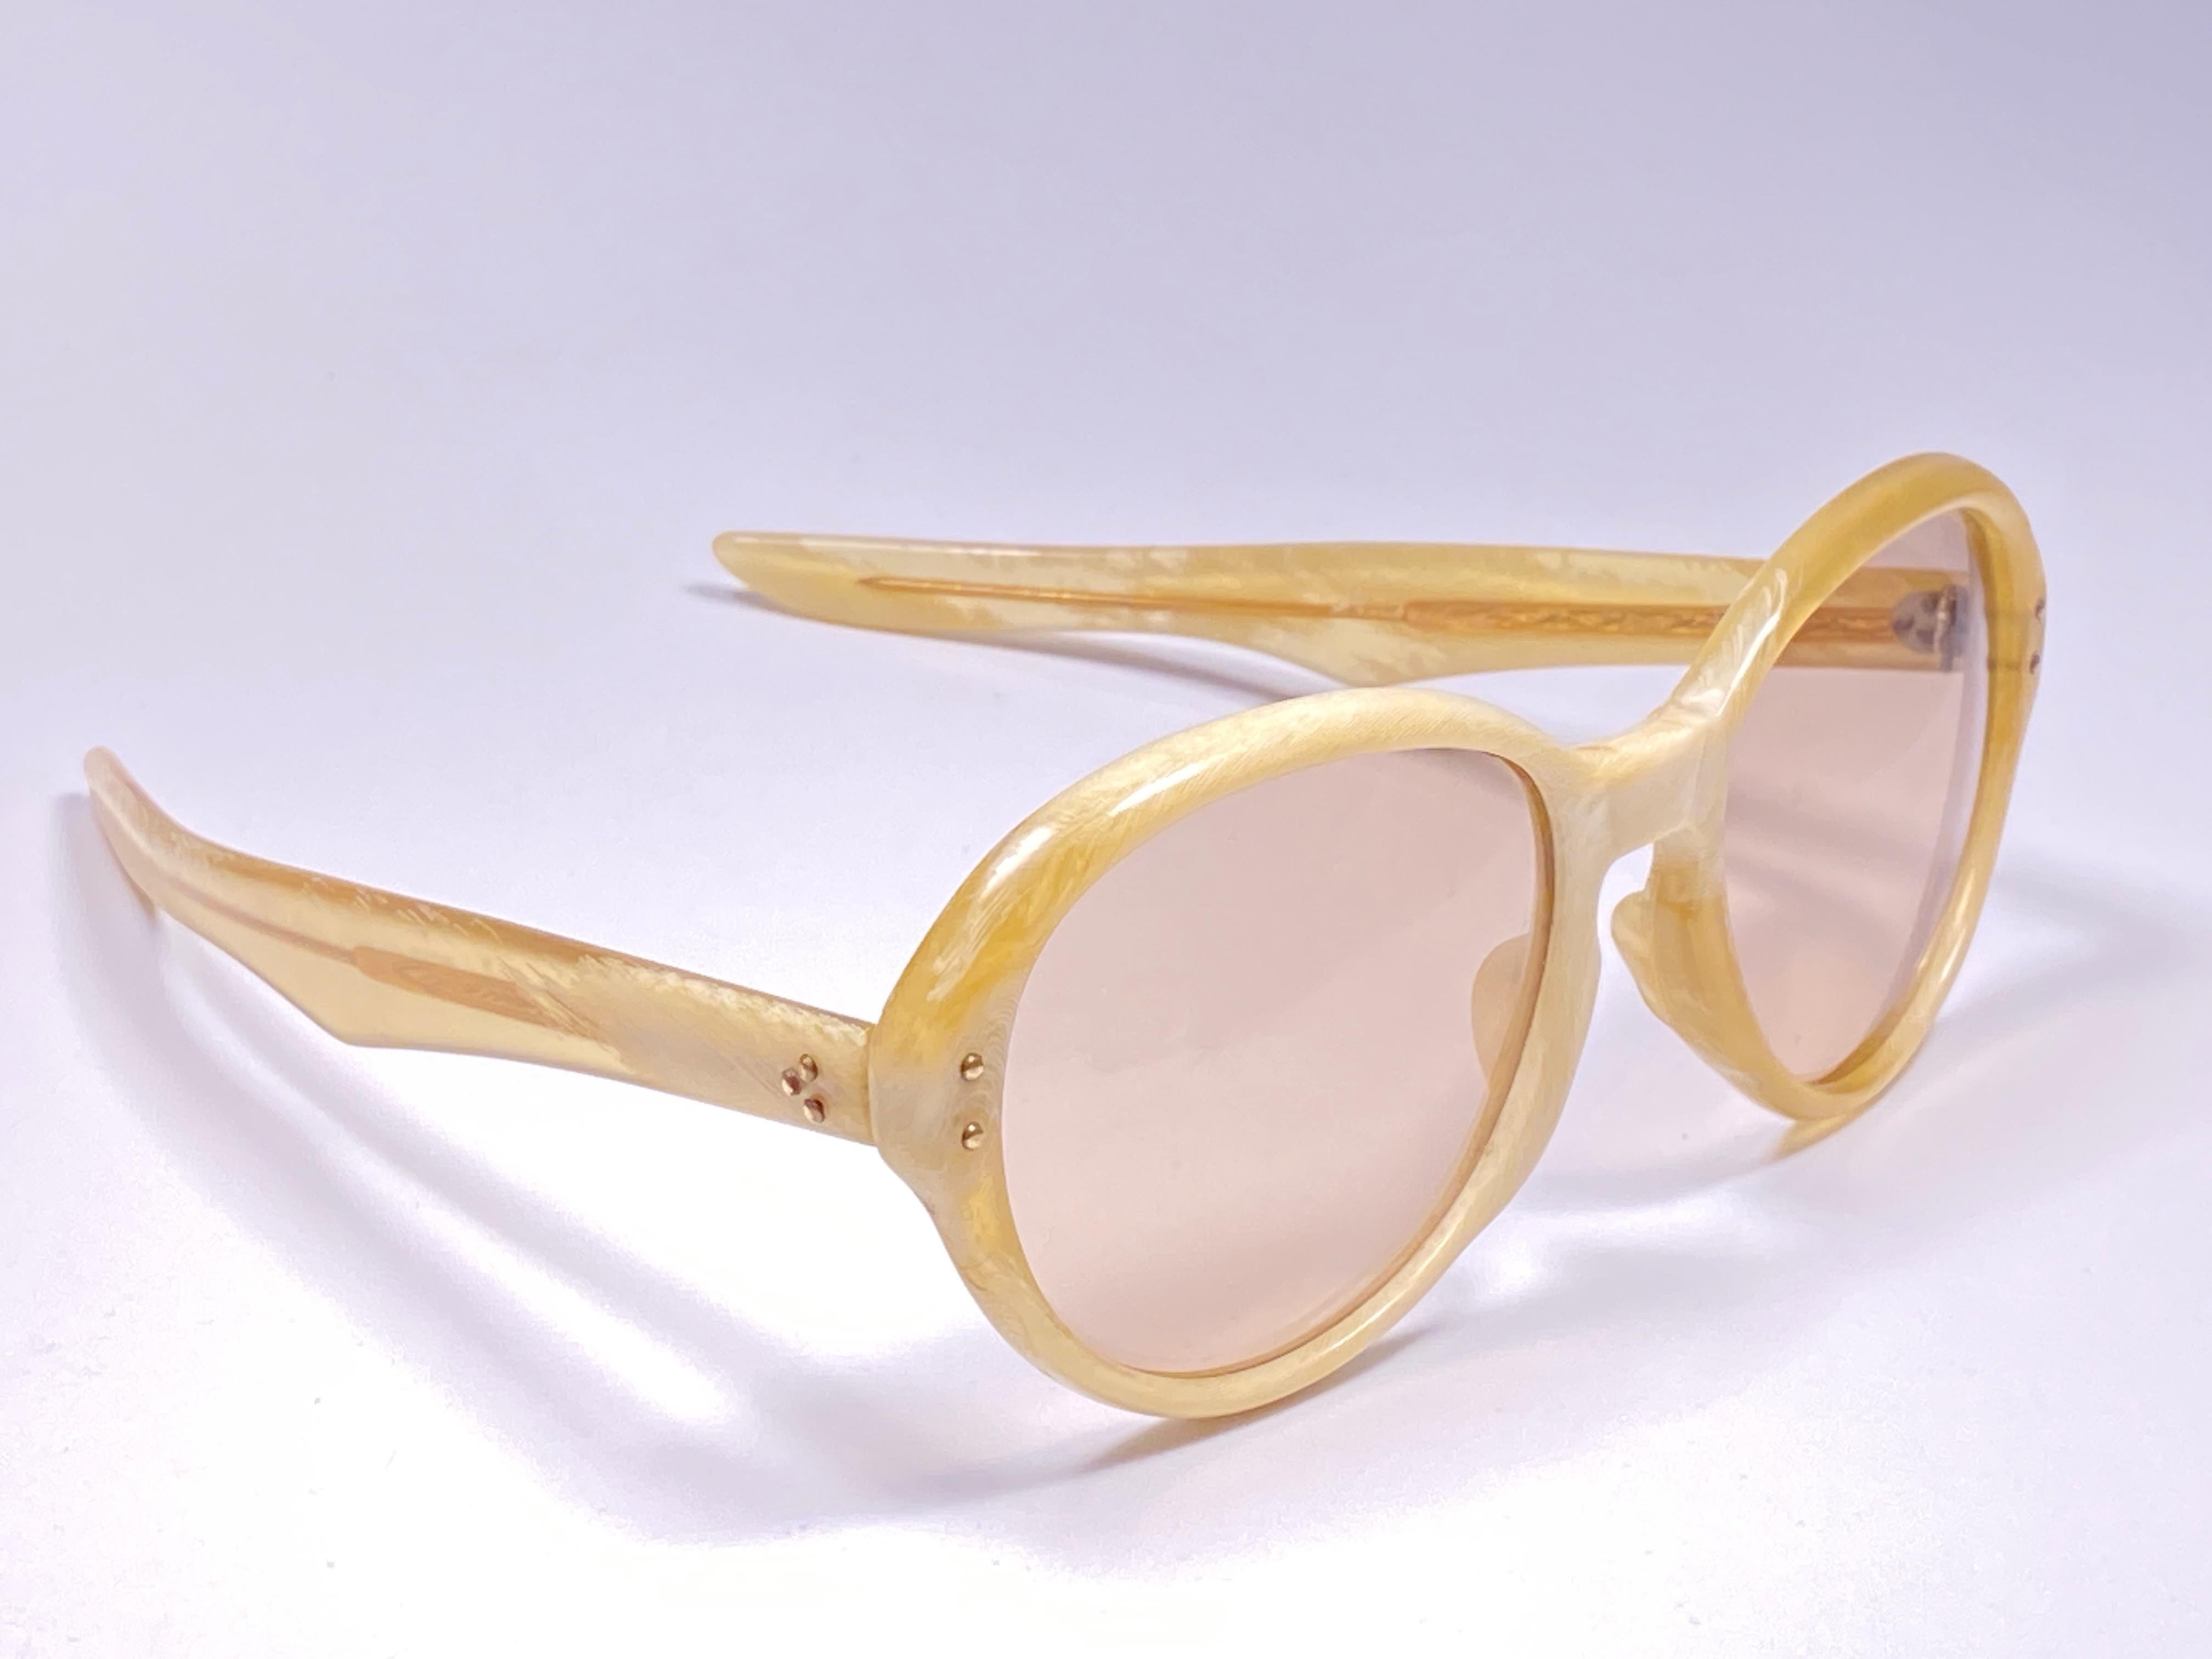 Vintage super rare lunettes de soleil rondes oversized beige avec des lentilles marron clair. 

Un savoir-faire et un style étonnants.

Mesures :

Avant : 15.5 cms

Hauteur de l'objectif : 4,8 cm

Largeur de l'objectif : 5,8 cm


